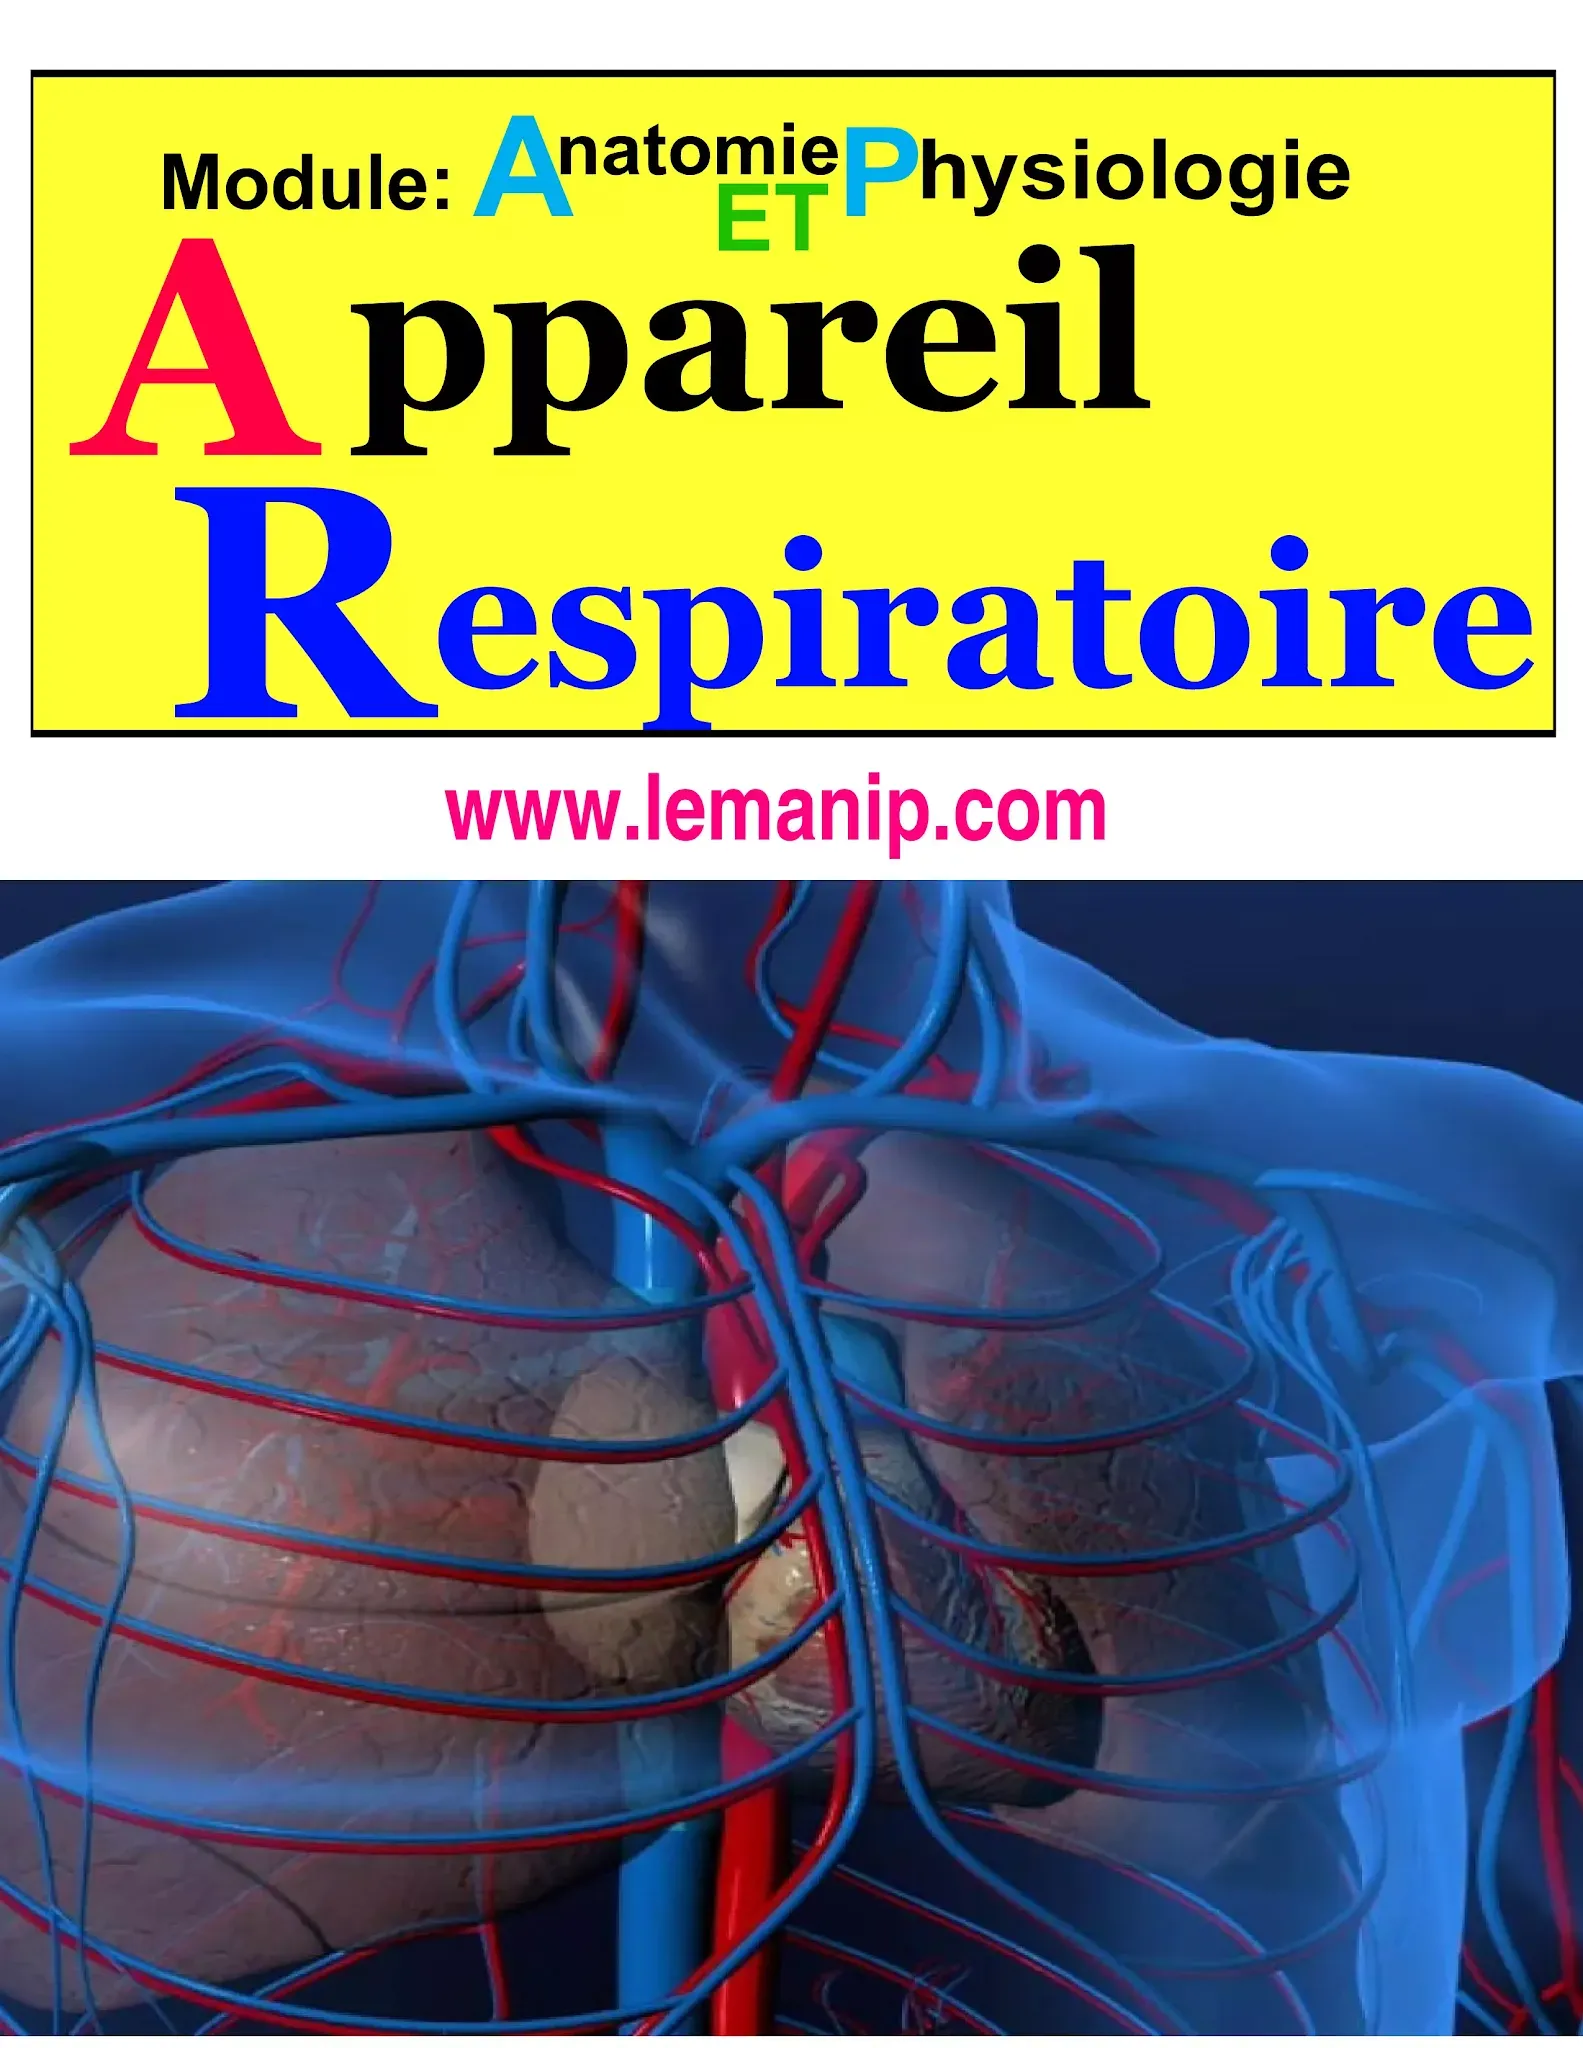 Module : Anatomie  Et Physiologie  Poumons, Systeme Et Appareil Respiratoire       Corps Humain Femme Et Homme